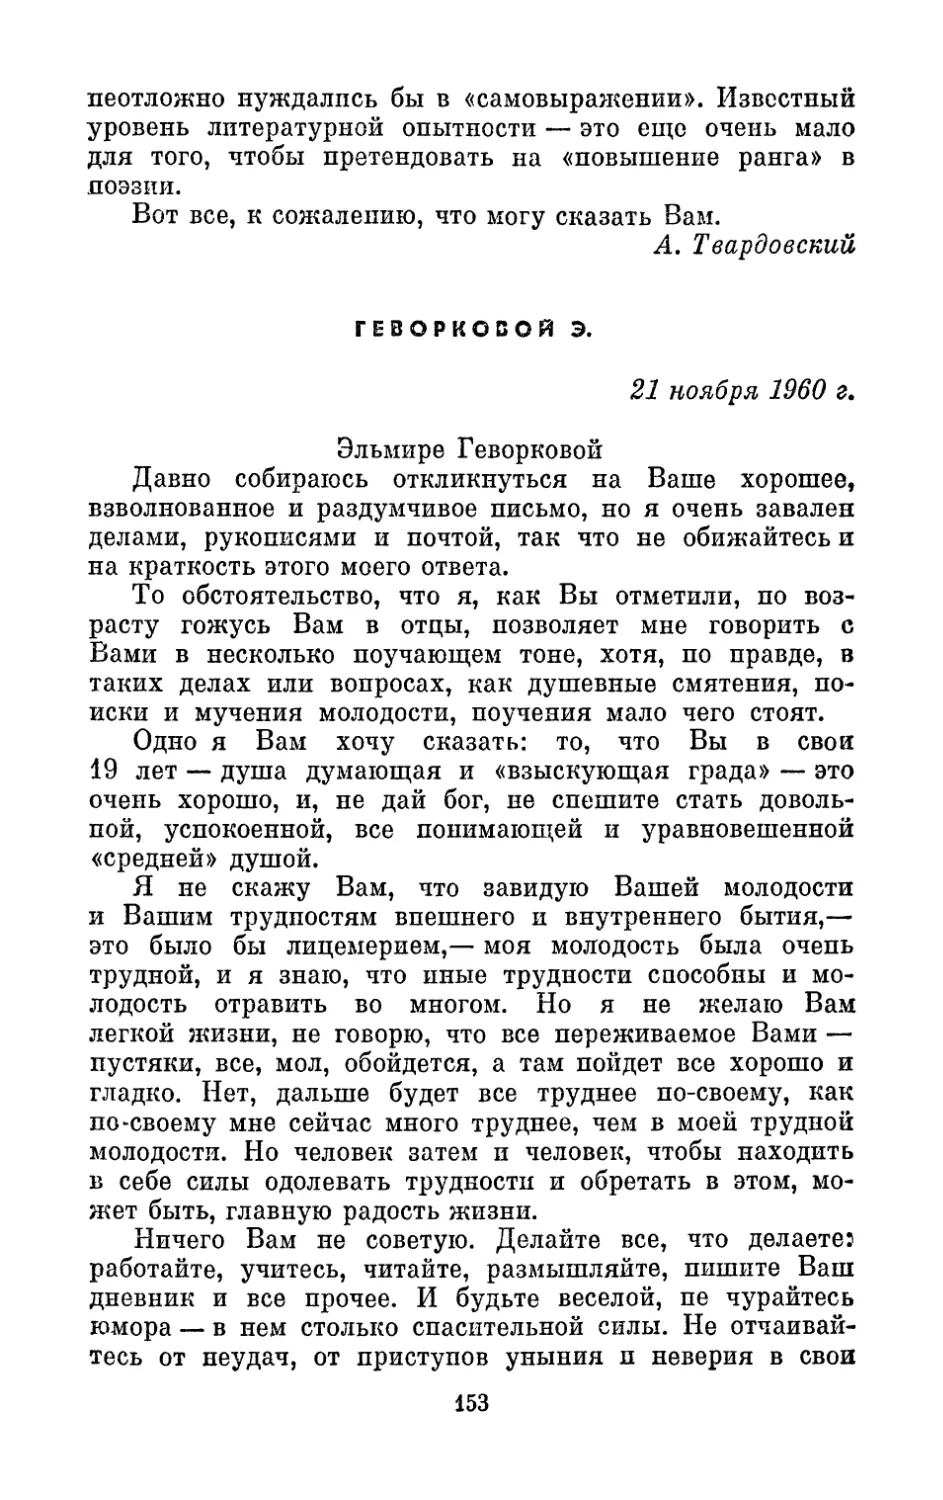 Геворковой Э., 21 ноября 1960 г.